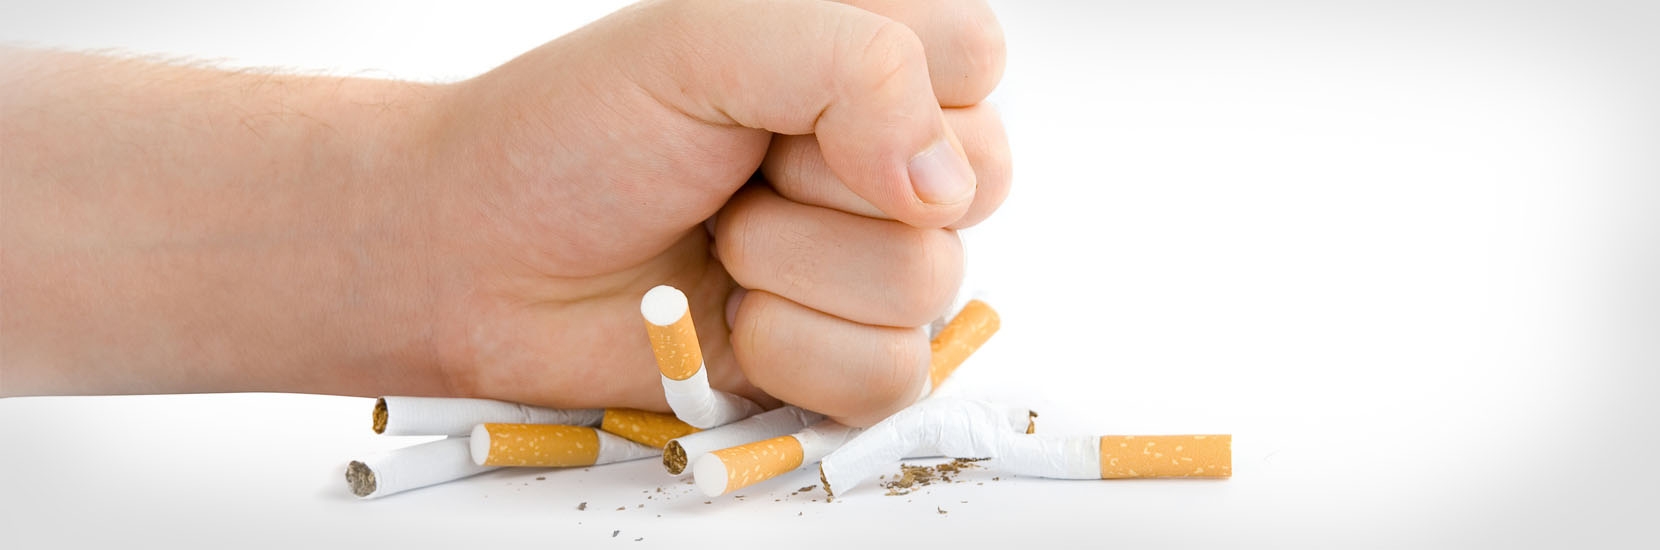 Journée Mondiale sans Tabac